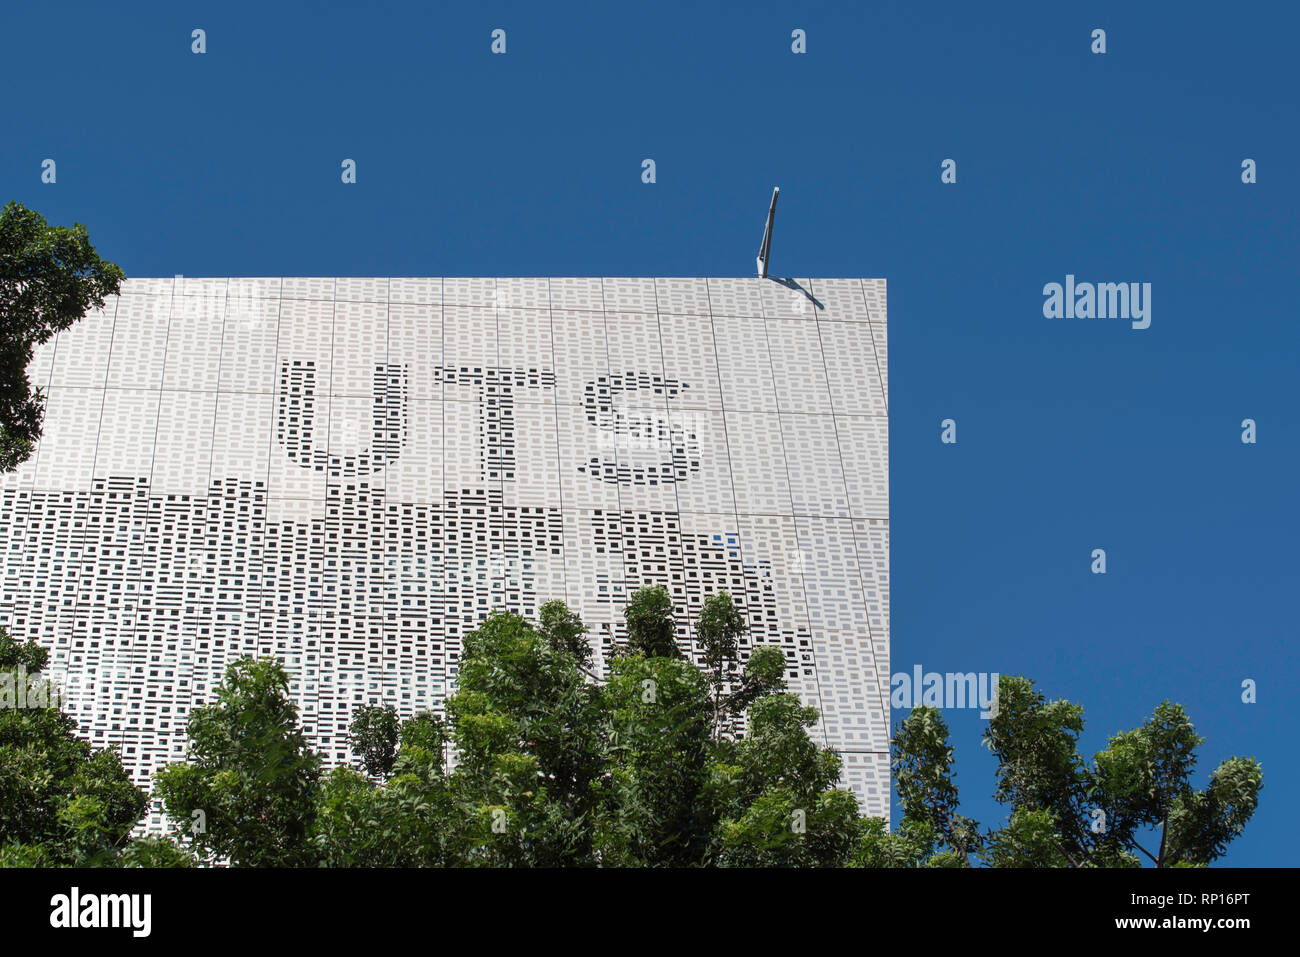 An der Technischen Universität Sydney Gebäude 11, Fakultät für Maschinenbau und Gebäude auf der Broadway liegt in einer Legierung binäre Bildschirm von Einsen und Nullen abgedeckt Stockfoto